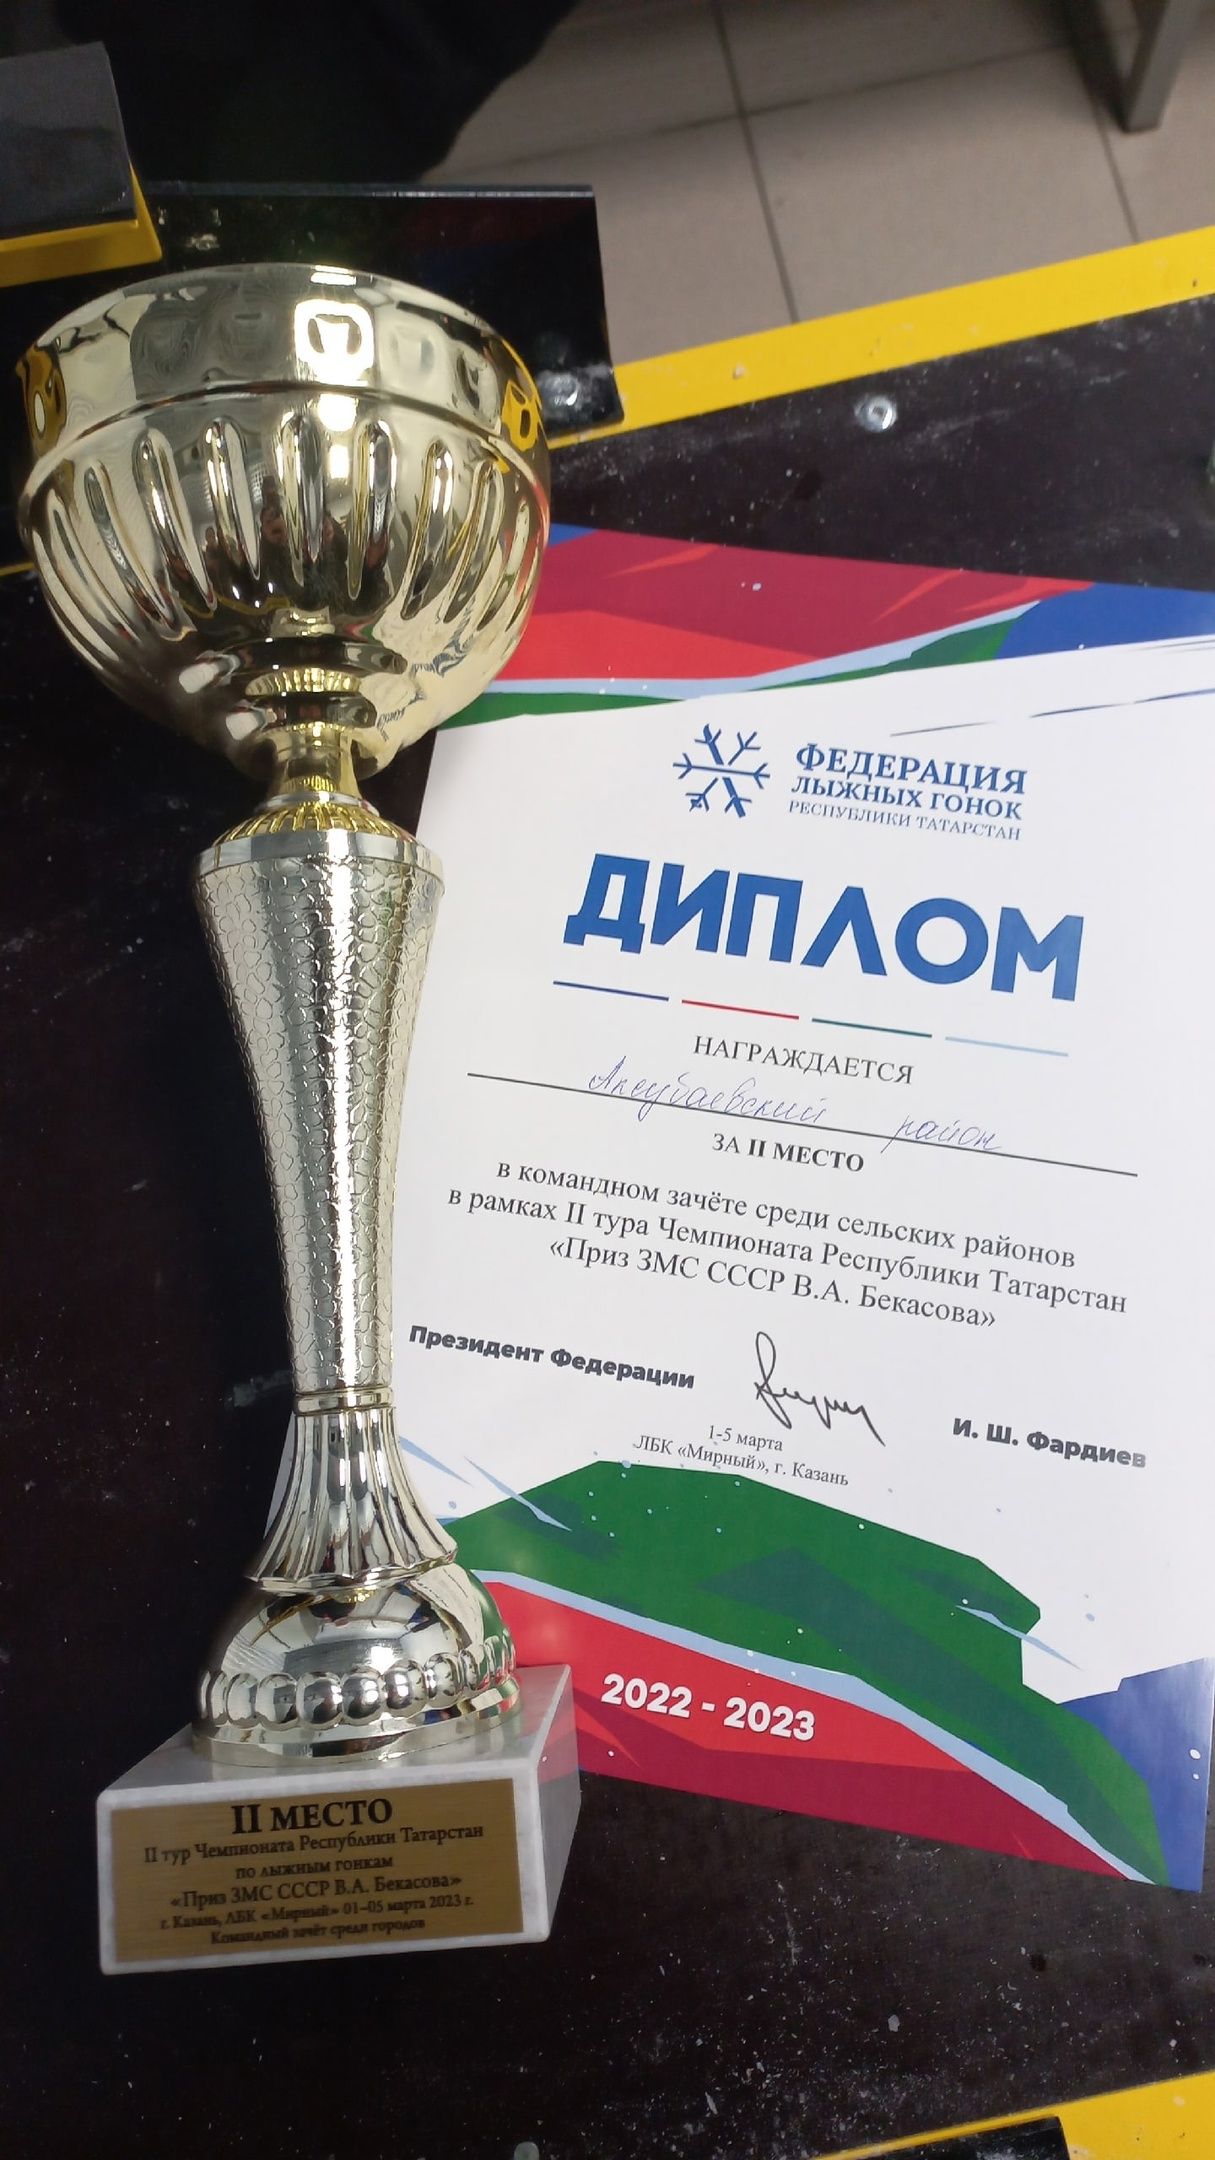 Аксубаевские лыжники завоевали серебро на Чемпионате республики